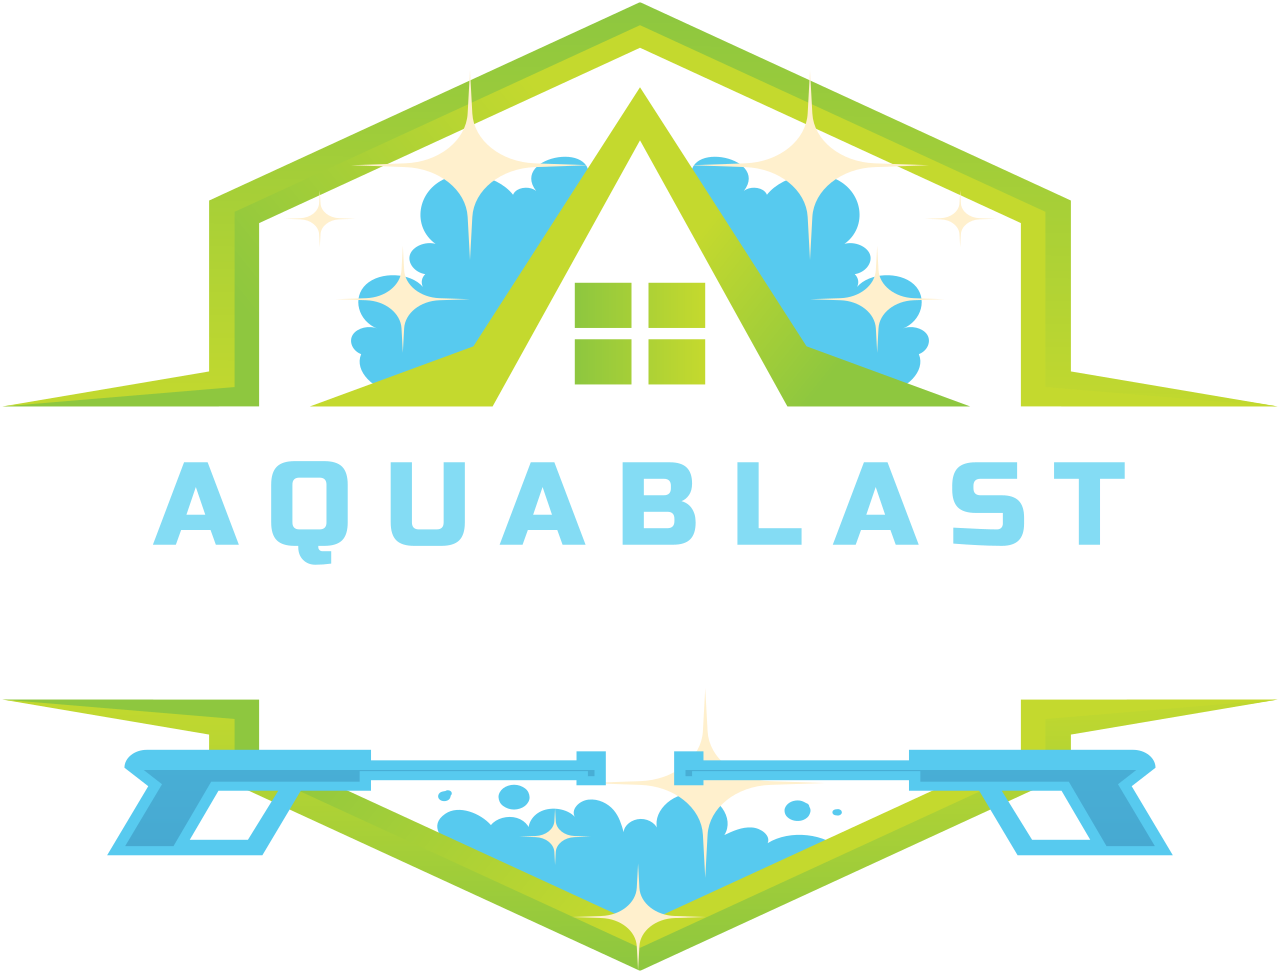 AQUABLAST's logo